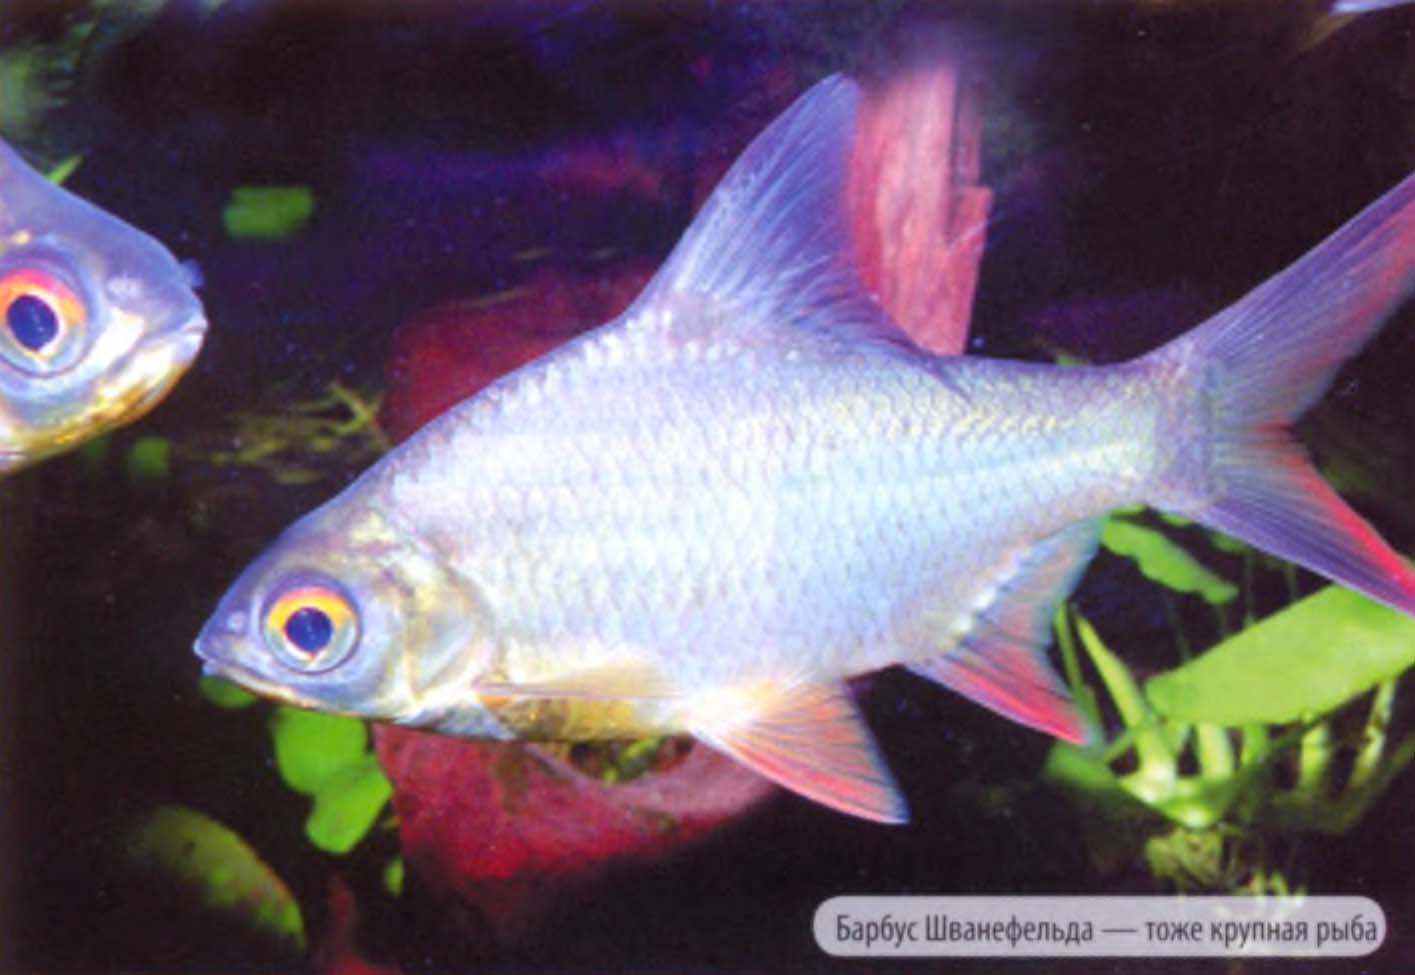 Барбус Шванефельда — тоже крупная рыба.